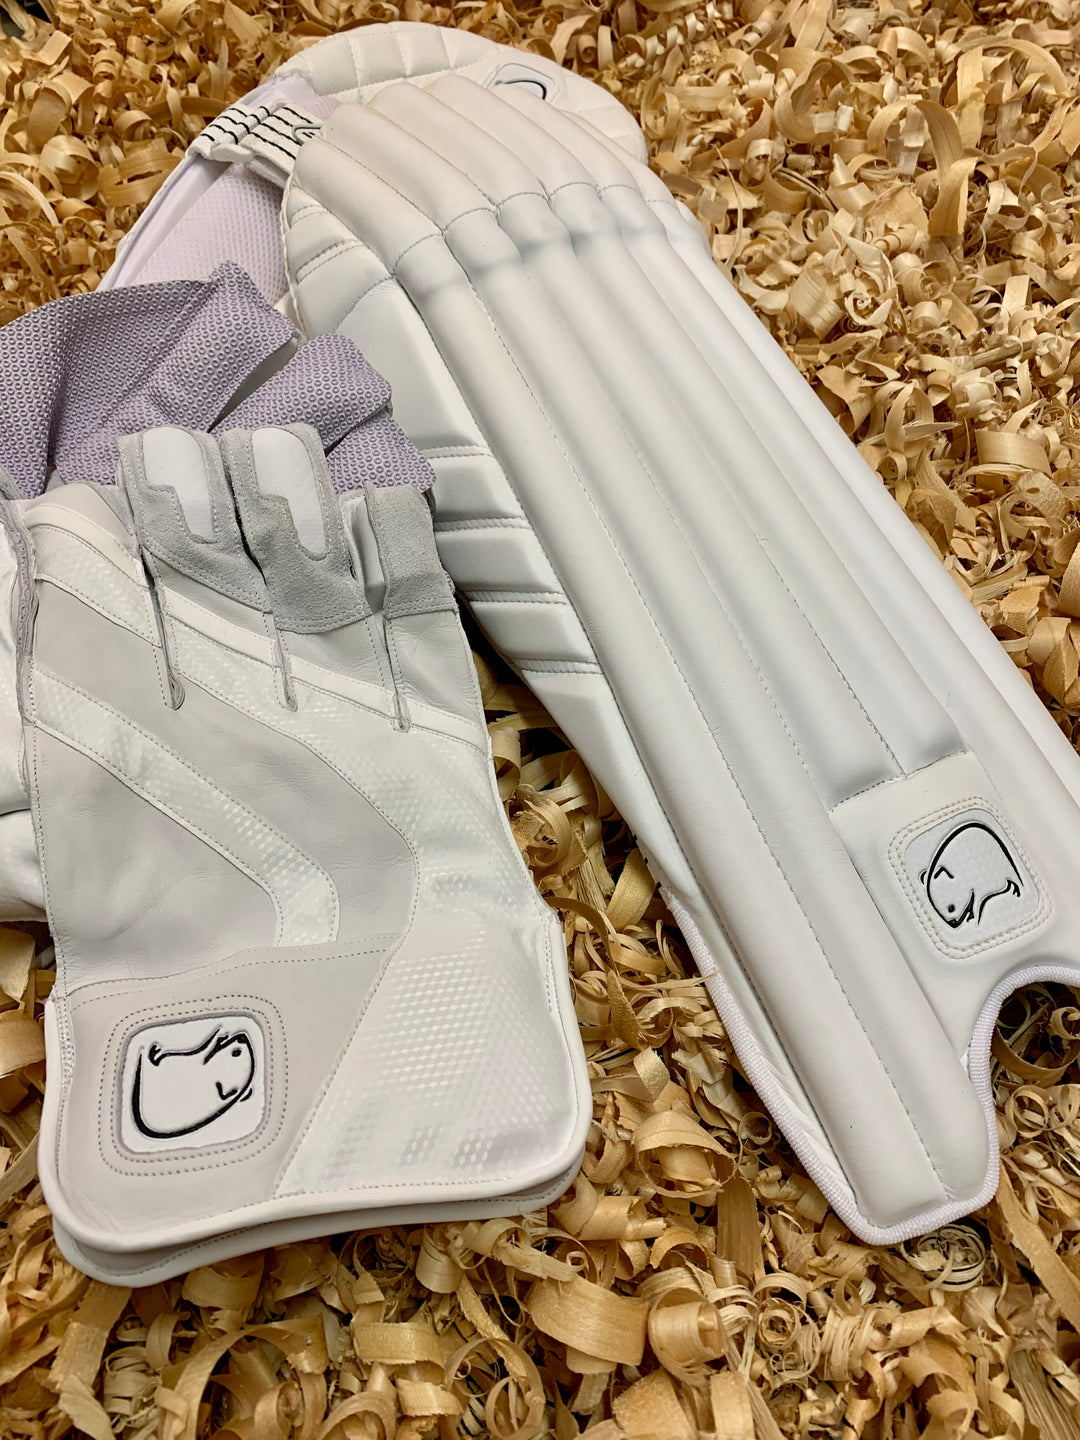 Wombat Cricket Pro Wicket Keeping Gloves MK2